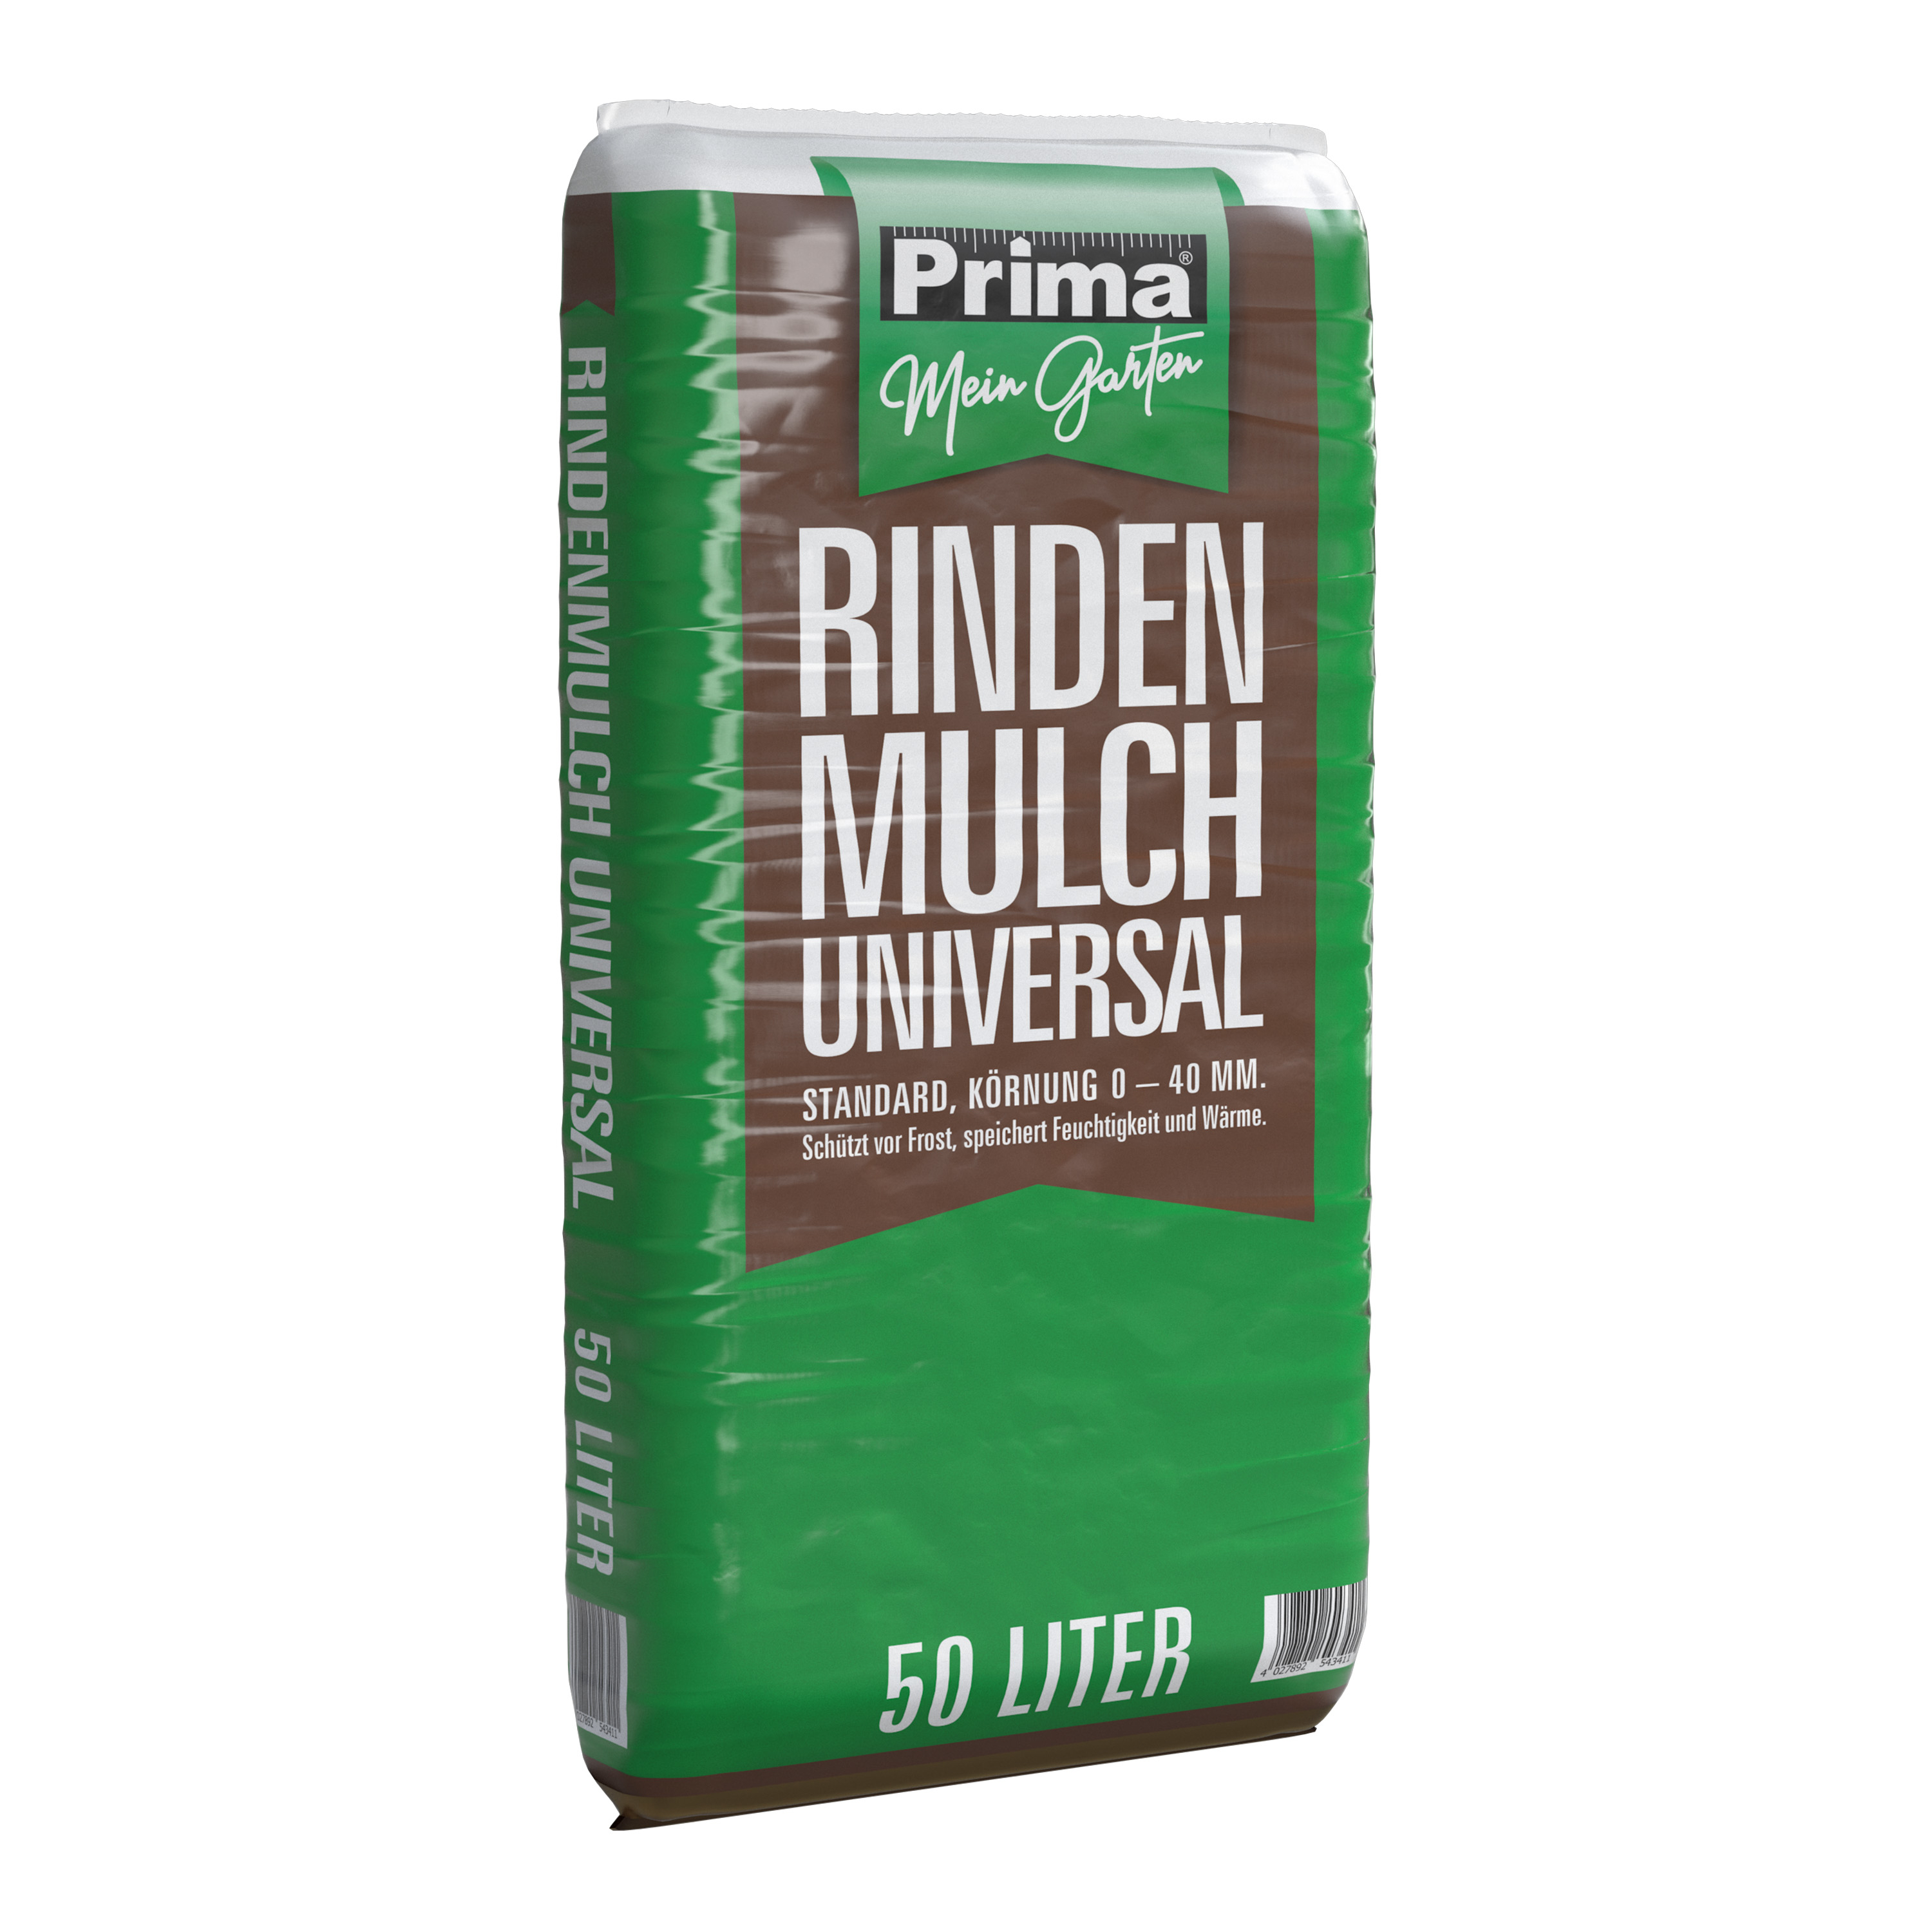 EUROBAUSTOFF ZENTRALLAGER OST Prima Universal Rindenmulch 0-40mm 50l 